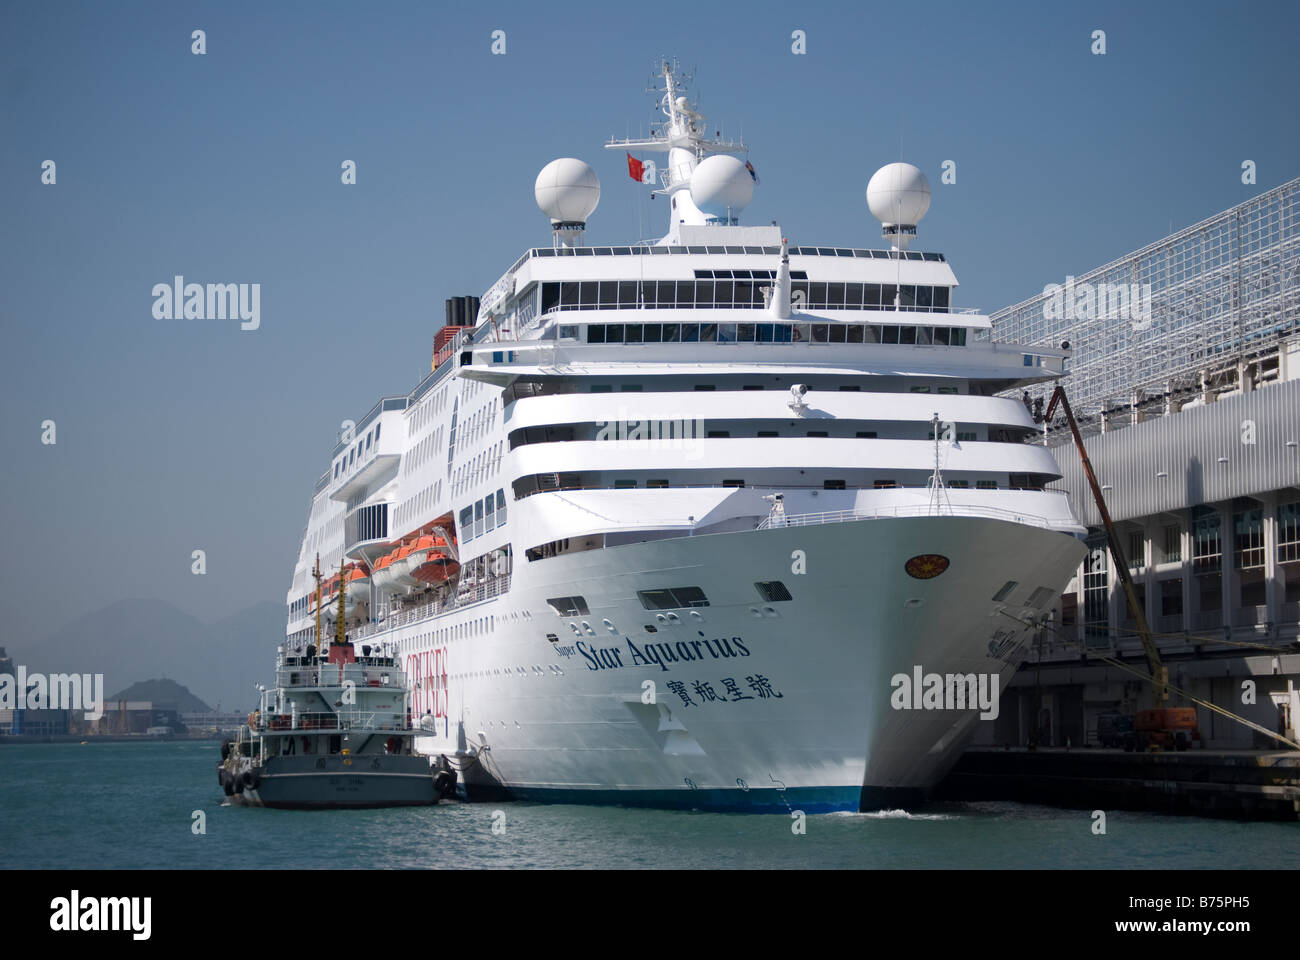 Star Cruises Cruise Liner at berth, Harbour City, Tsim Sha Tsui, Kowloon, Hong Kong, People's Republic of China Stock Photo